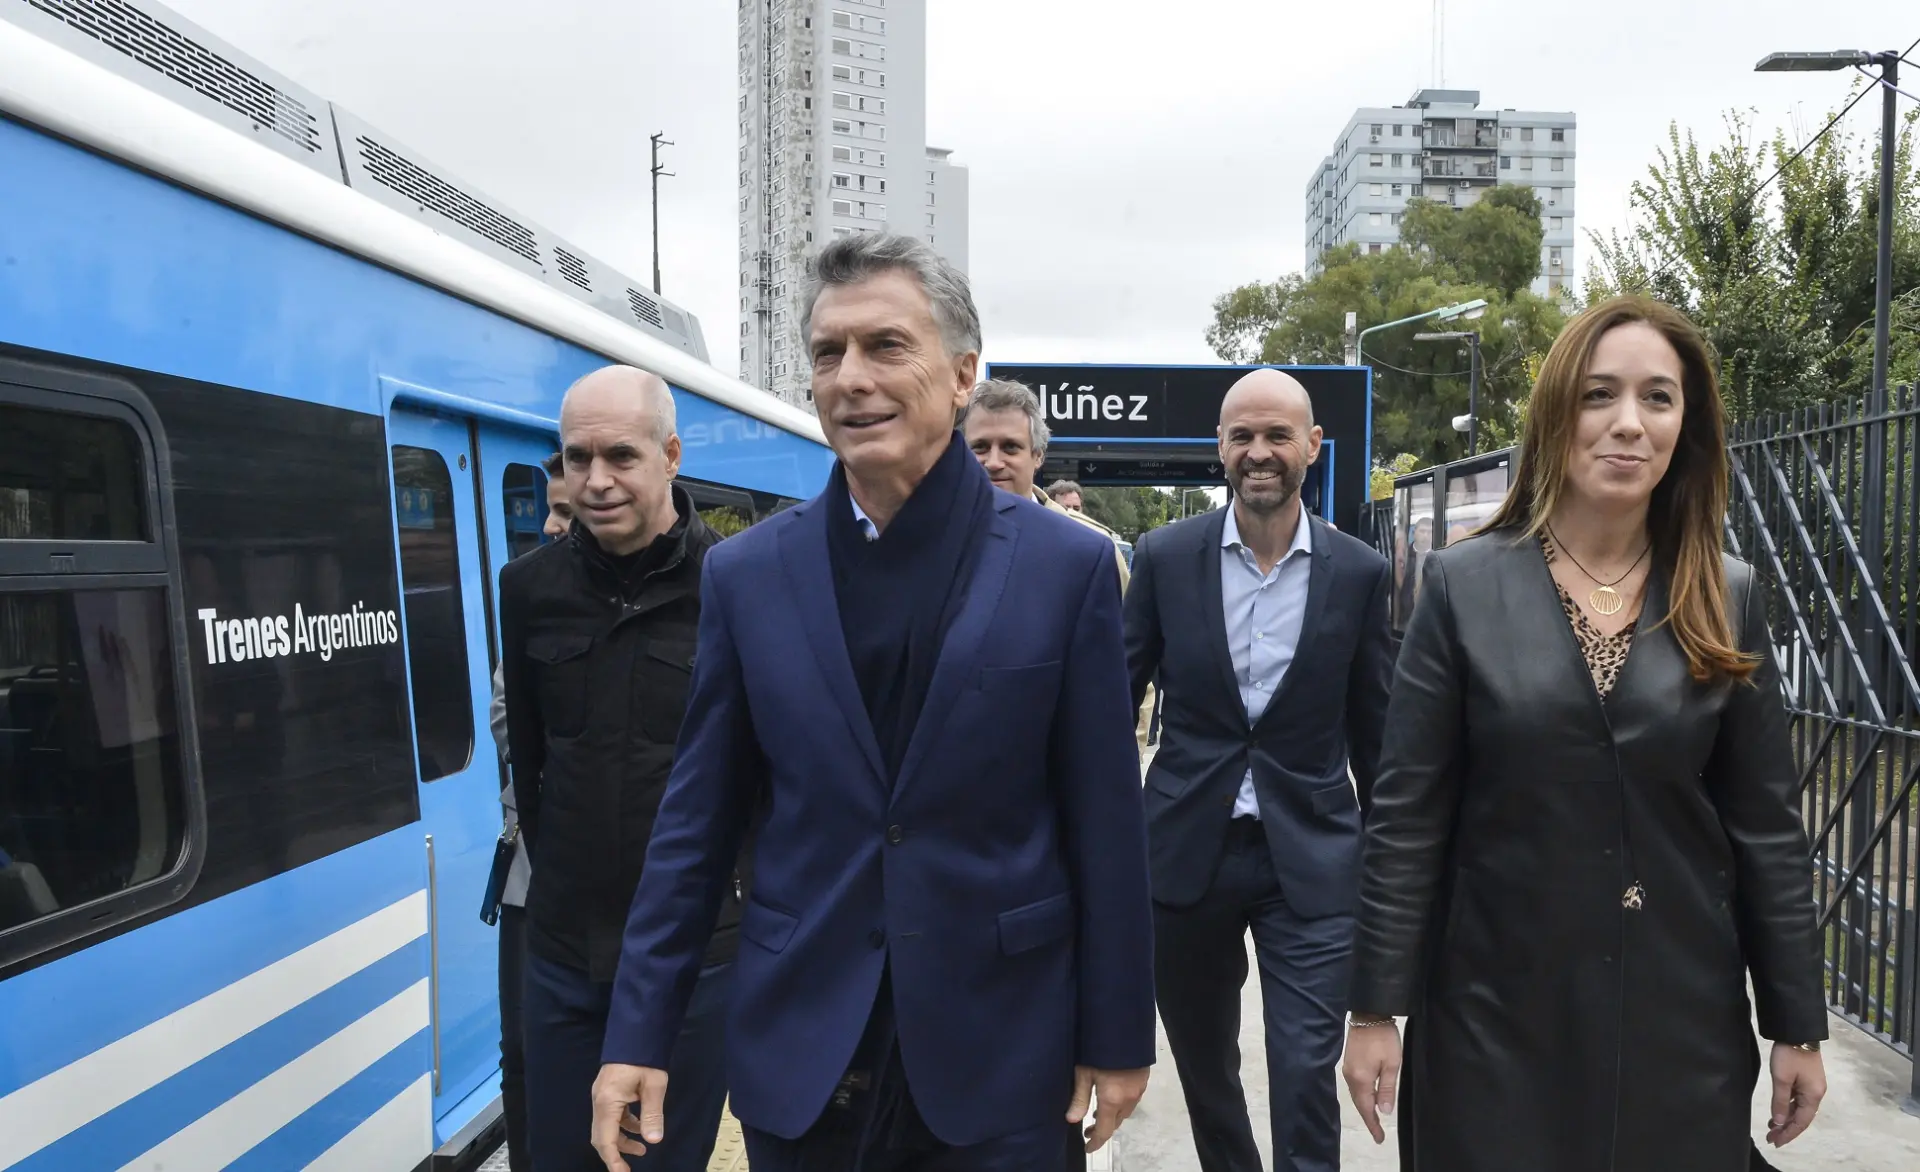 macri y los ferrocarriles - Qué hizo Macri con los trenes argentinos